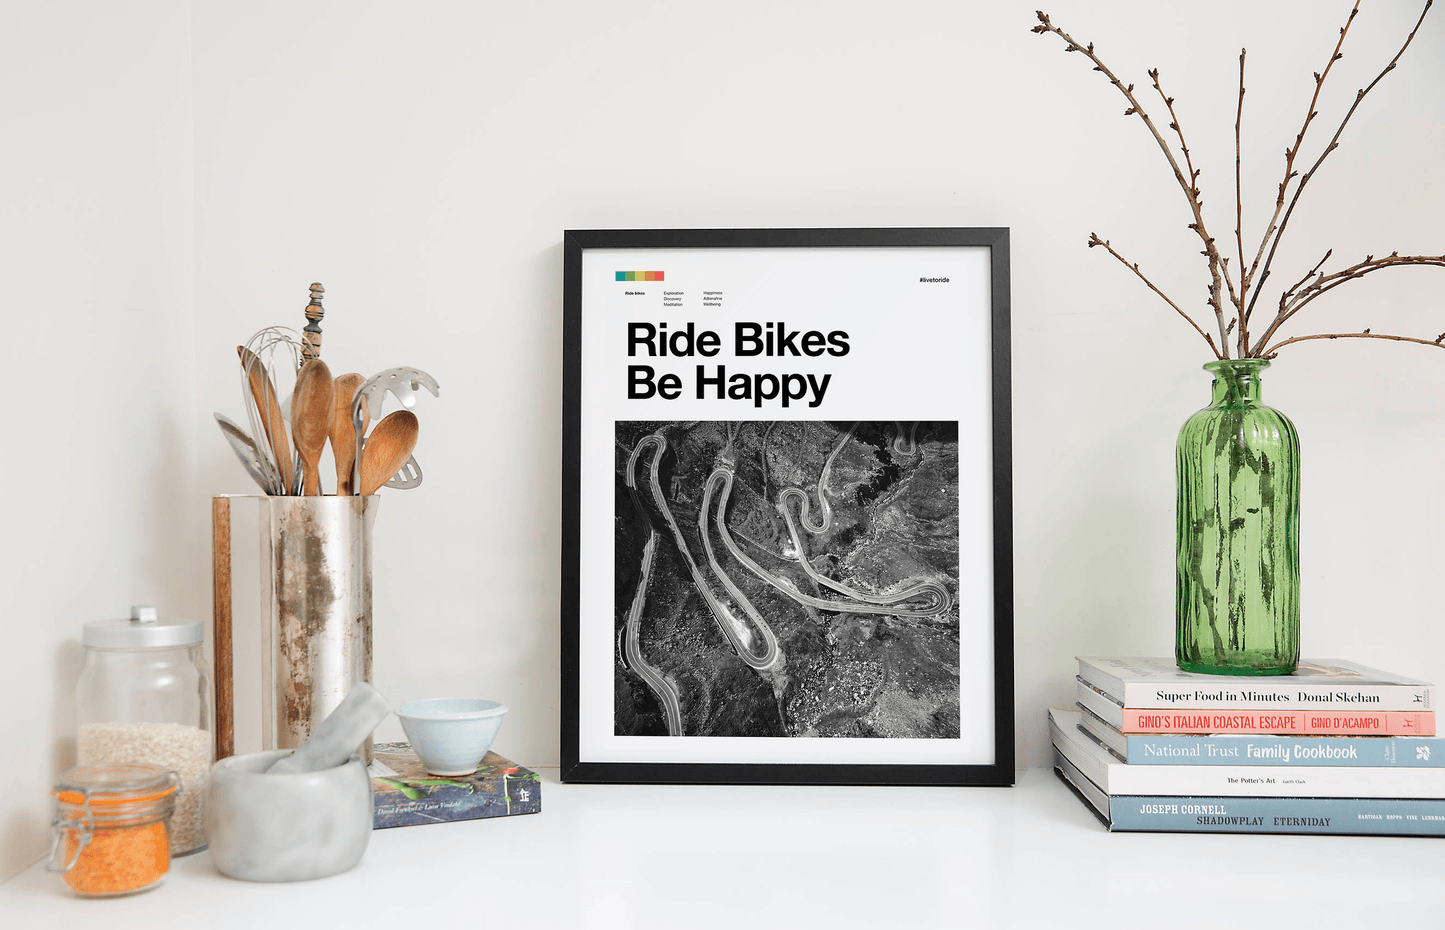 Rennrad-Kunstdruck - Ride Bikes Be Happy